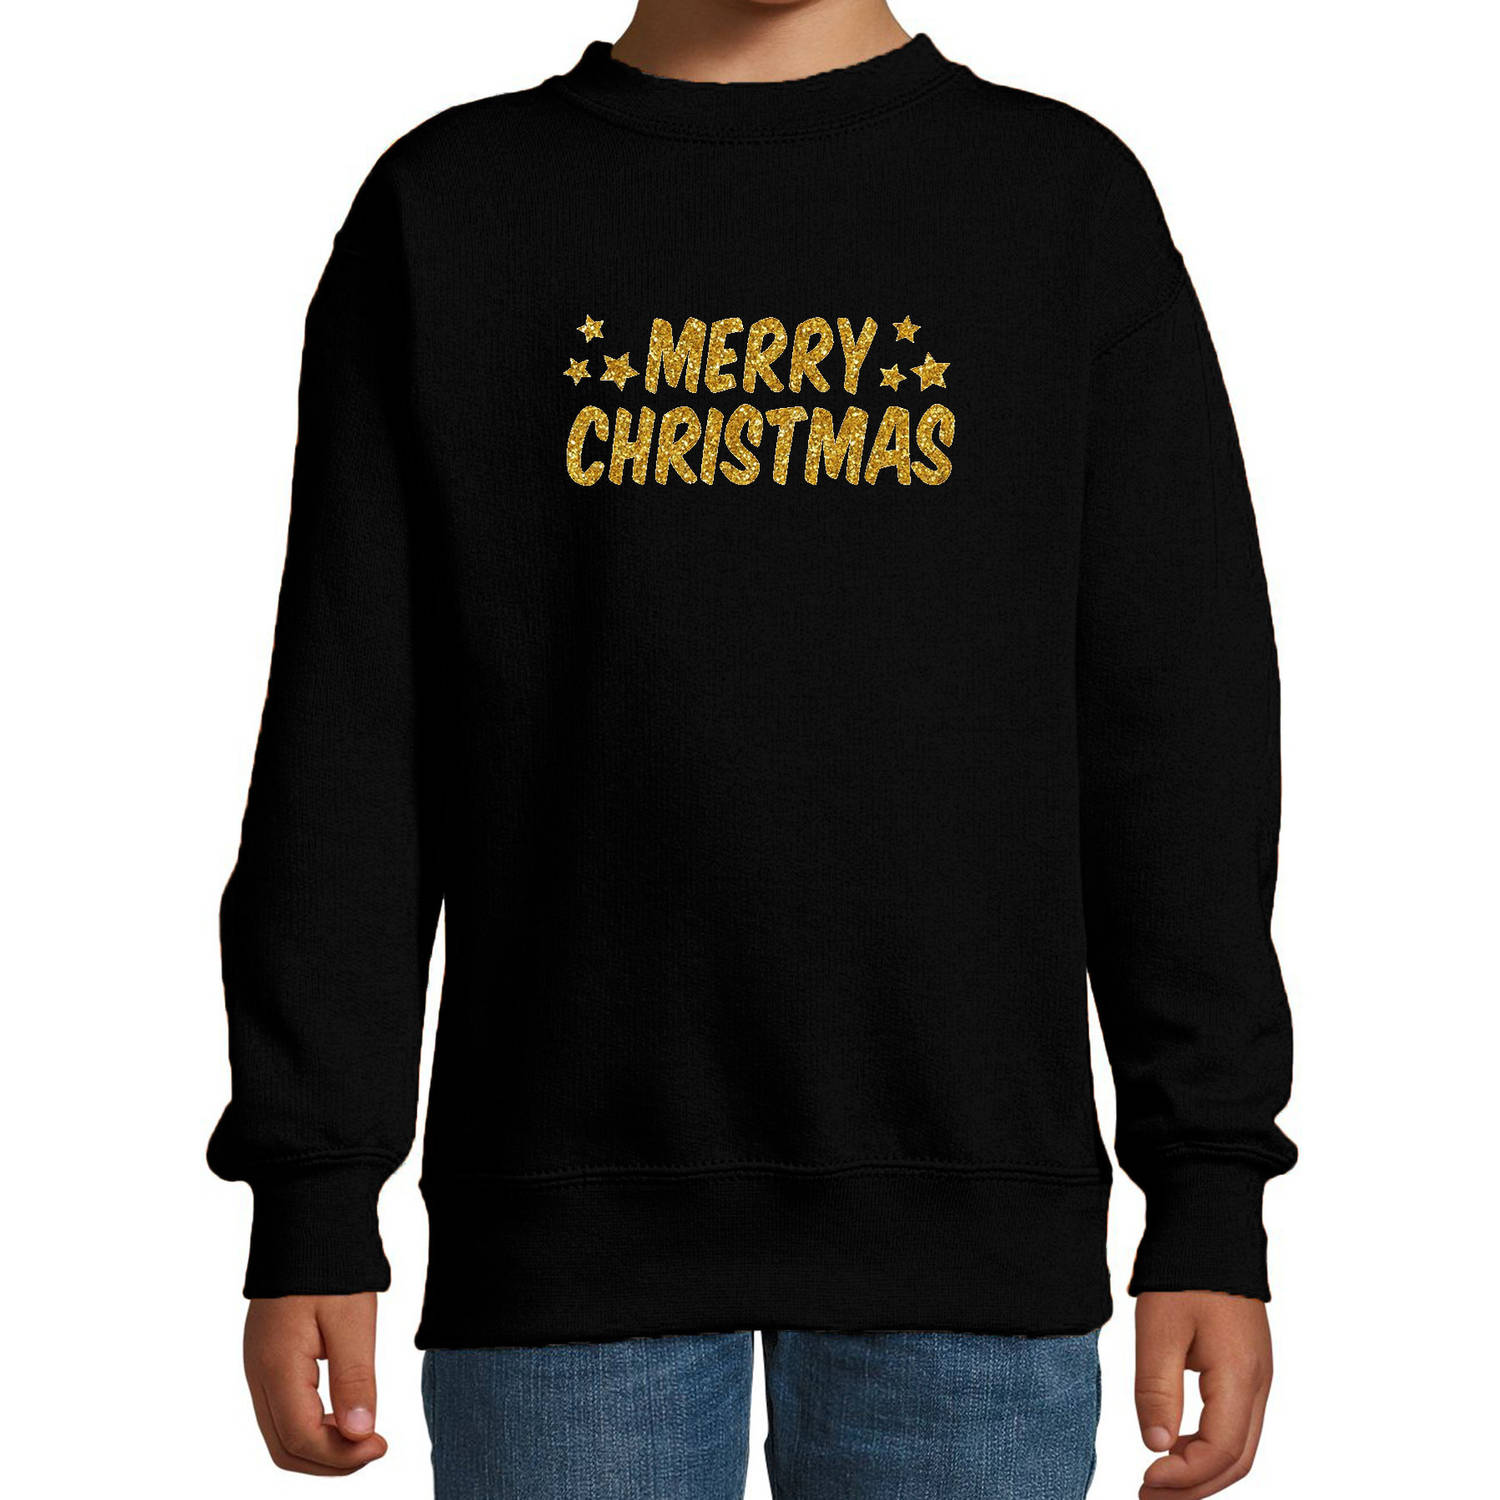 Merry Christmas Kerst sweater / trui zwart voor kinderen met gouden glitter bedrukking 9-11 jaar (134/146) - kerst truie